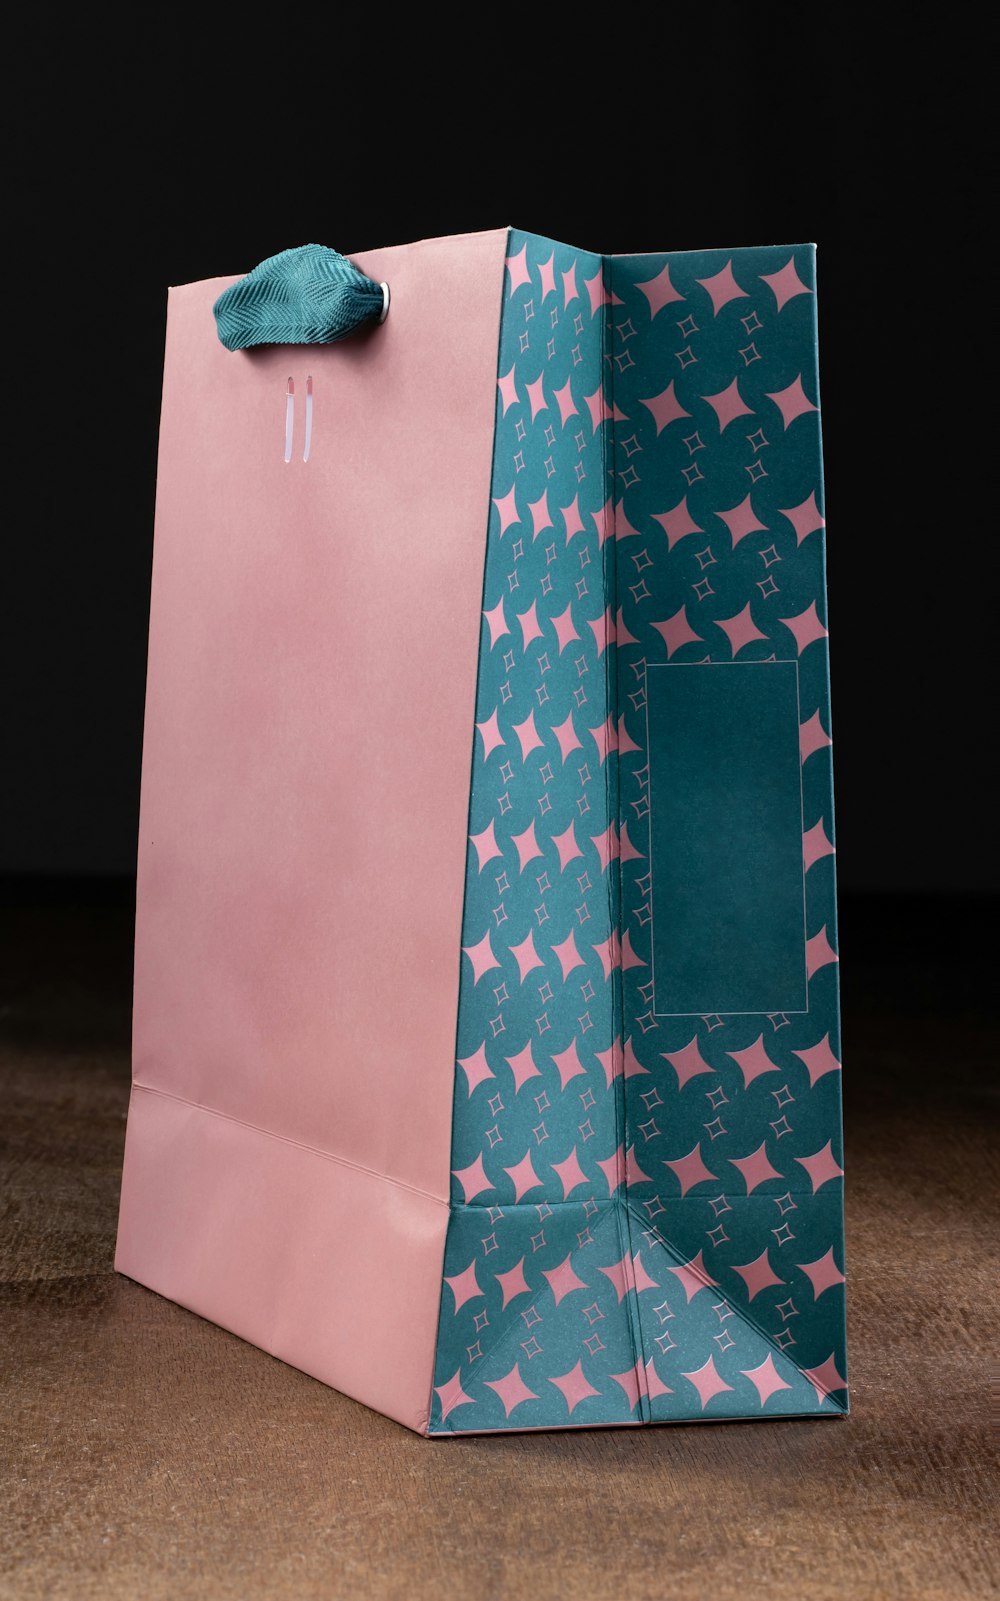 Una bolsa de compras rosa y azul con estrellas